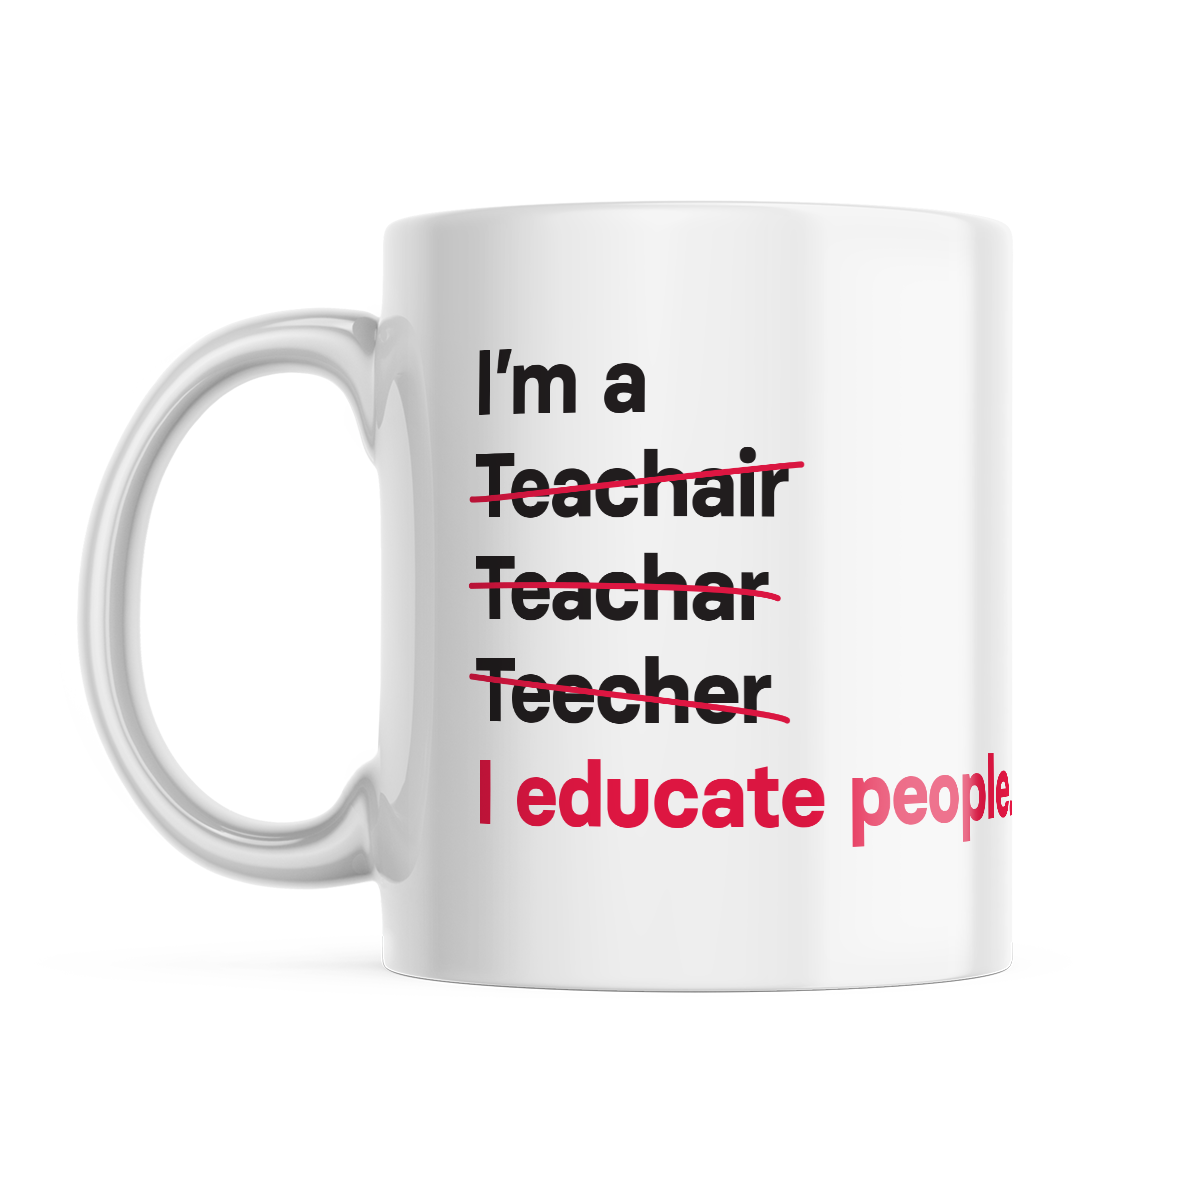 I'm a Teacher